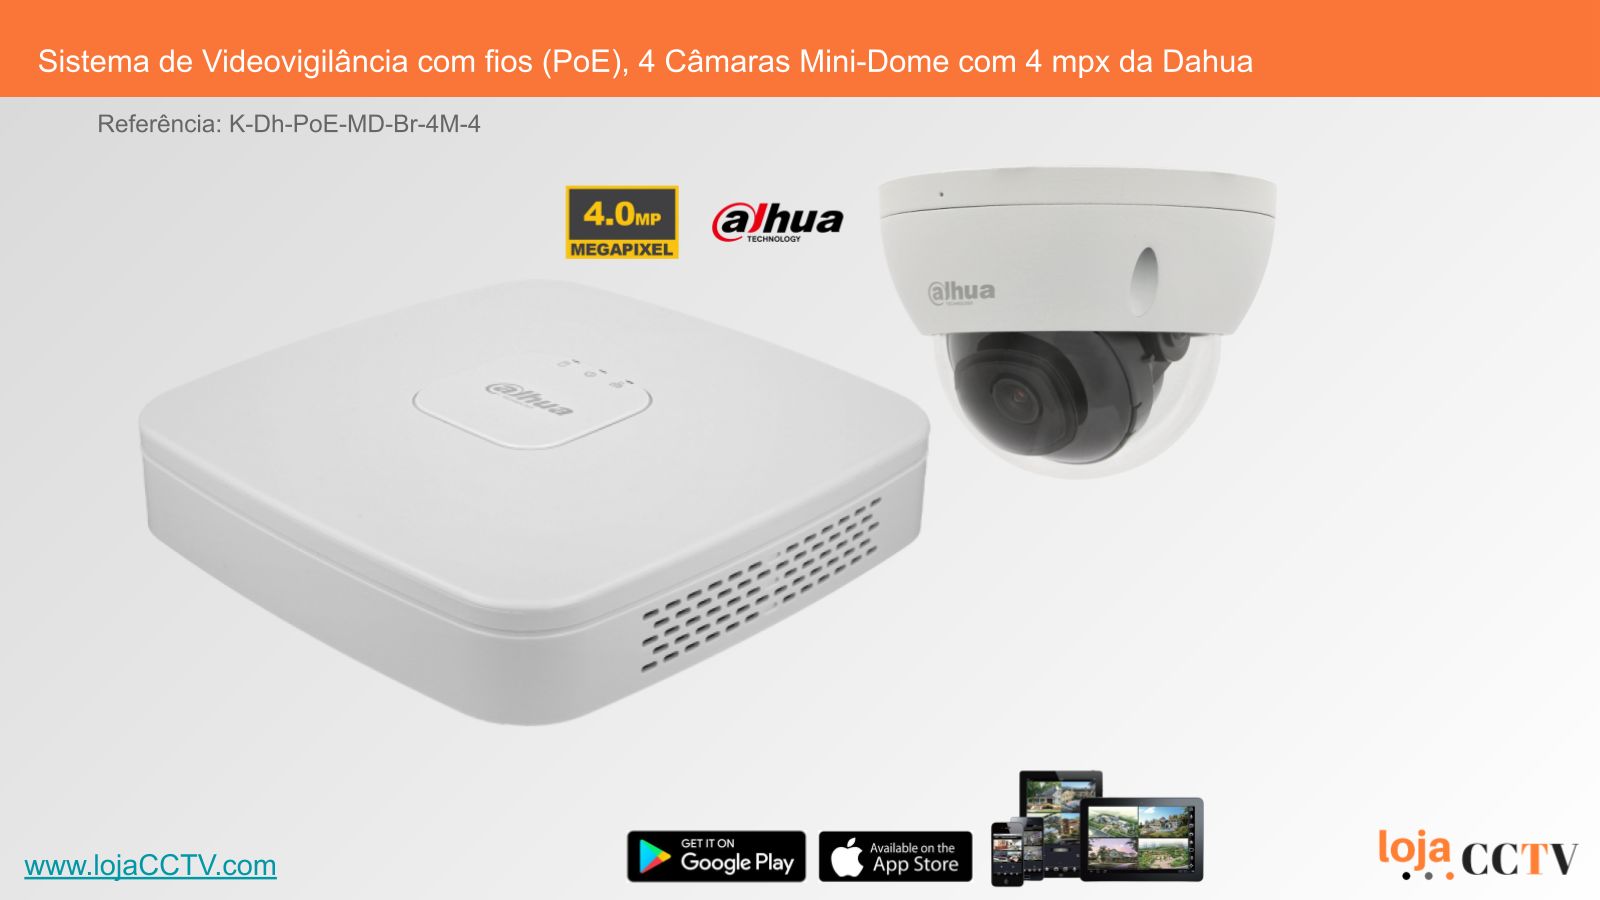 Videovigilância com fios (PoE) 4 Câmaras Mini-Dome 4 mpx, Dahua